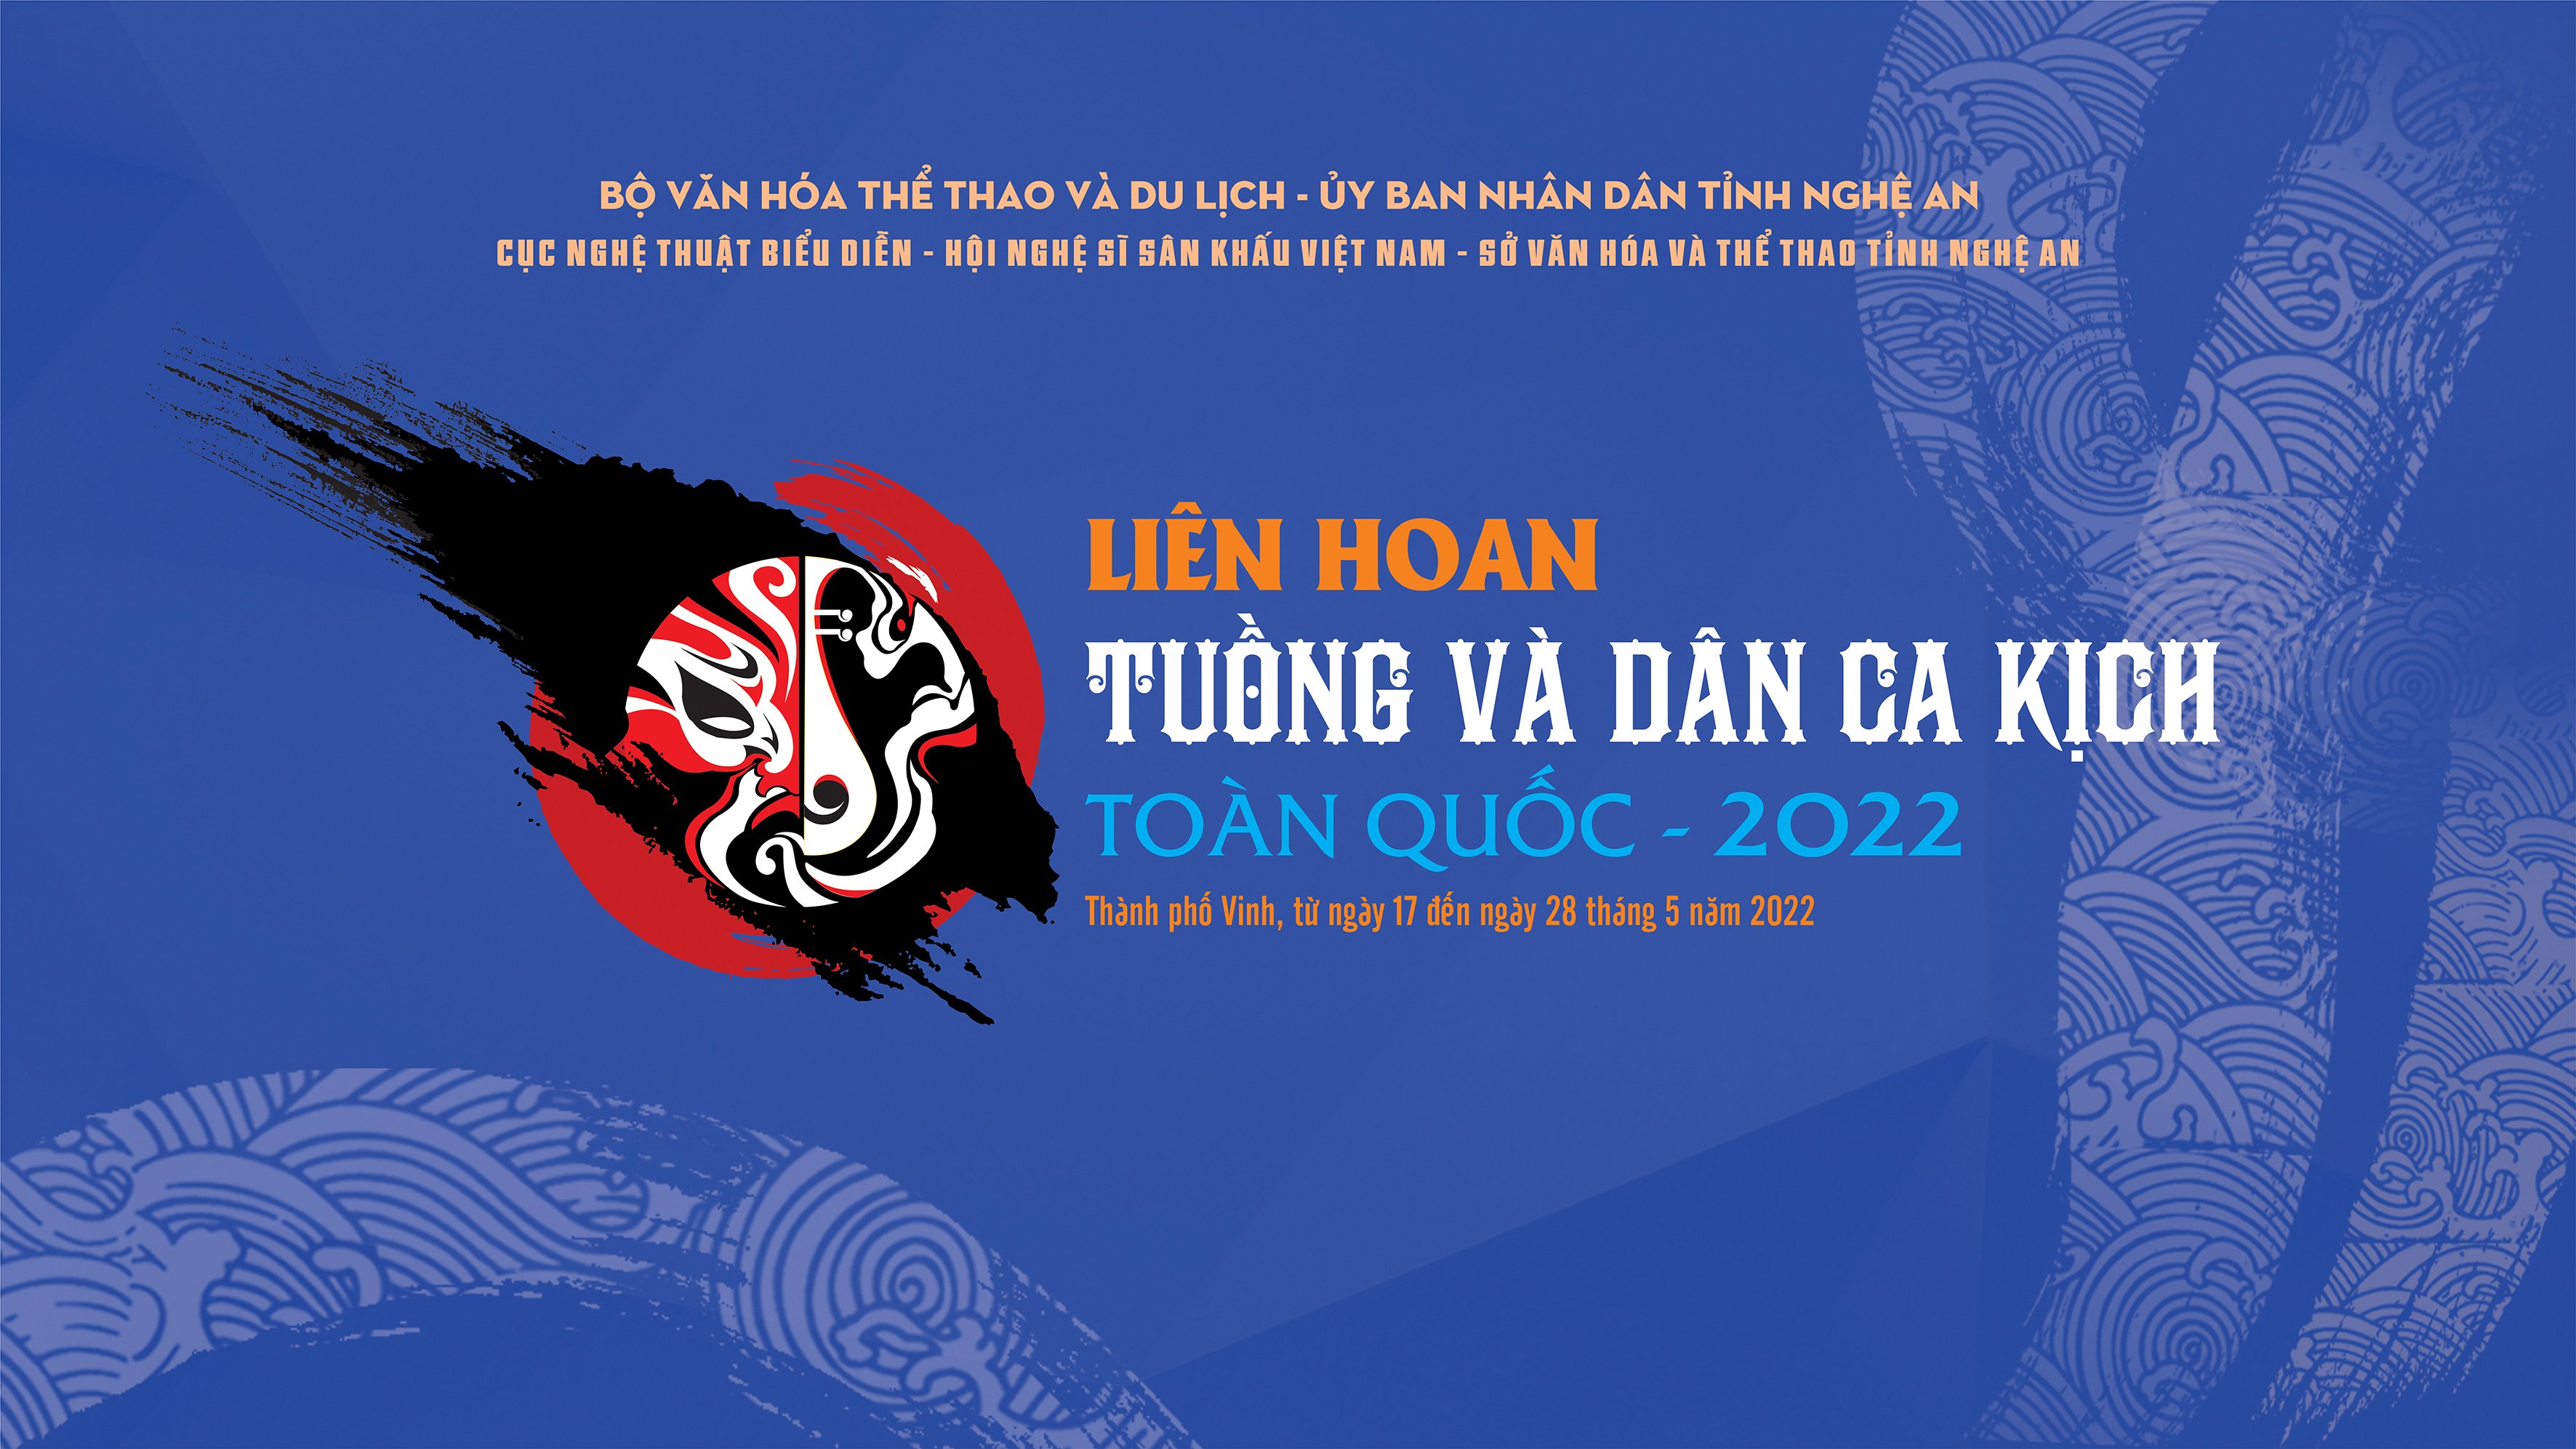 LIÊN HOAN TUỒNG VÀ DÂN CA KỊCH TOÀN QUỐC 2022 - ĐI QUA NGÀY GIÔNG BÃO - Nhà hát nghệ thuật truyền thống Hà Tĩnh